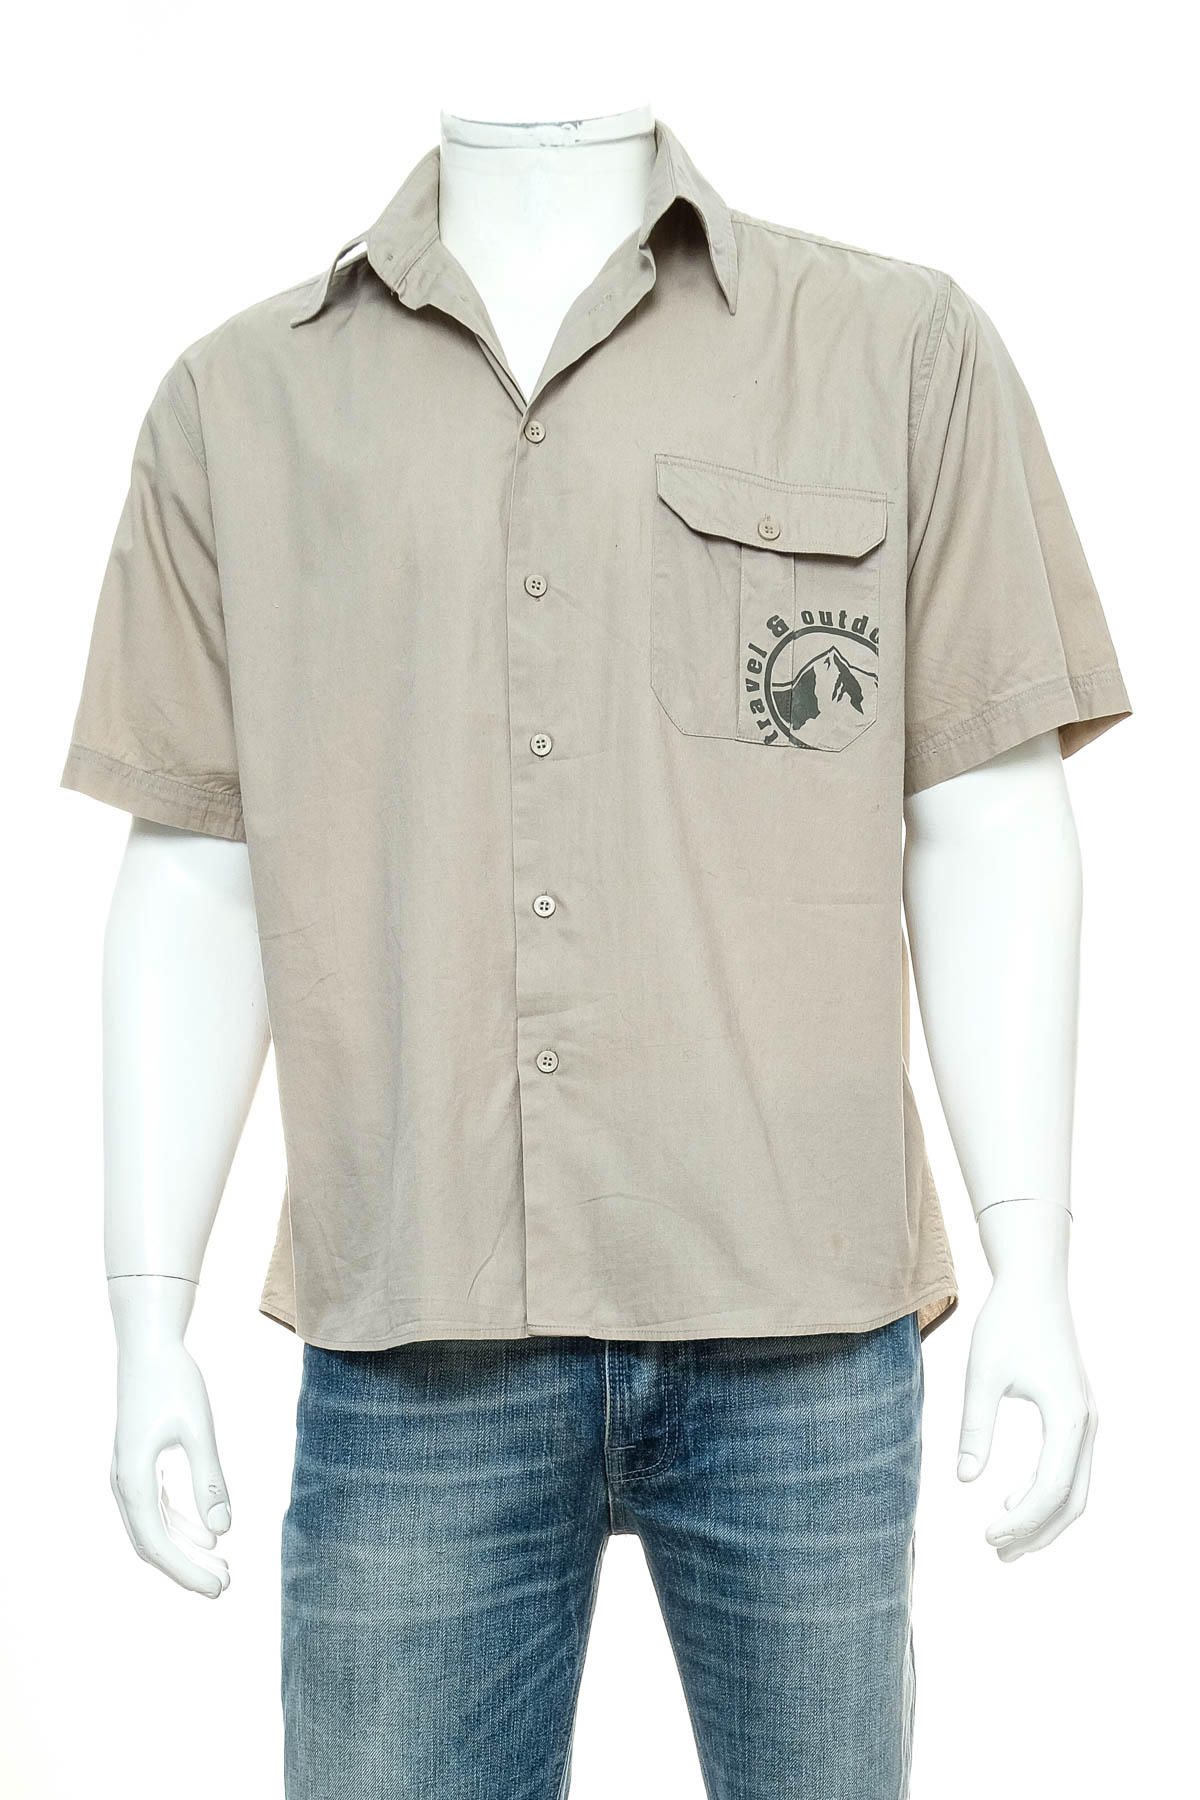 Ανδρικό πουκάμισο - Port Louis - 0